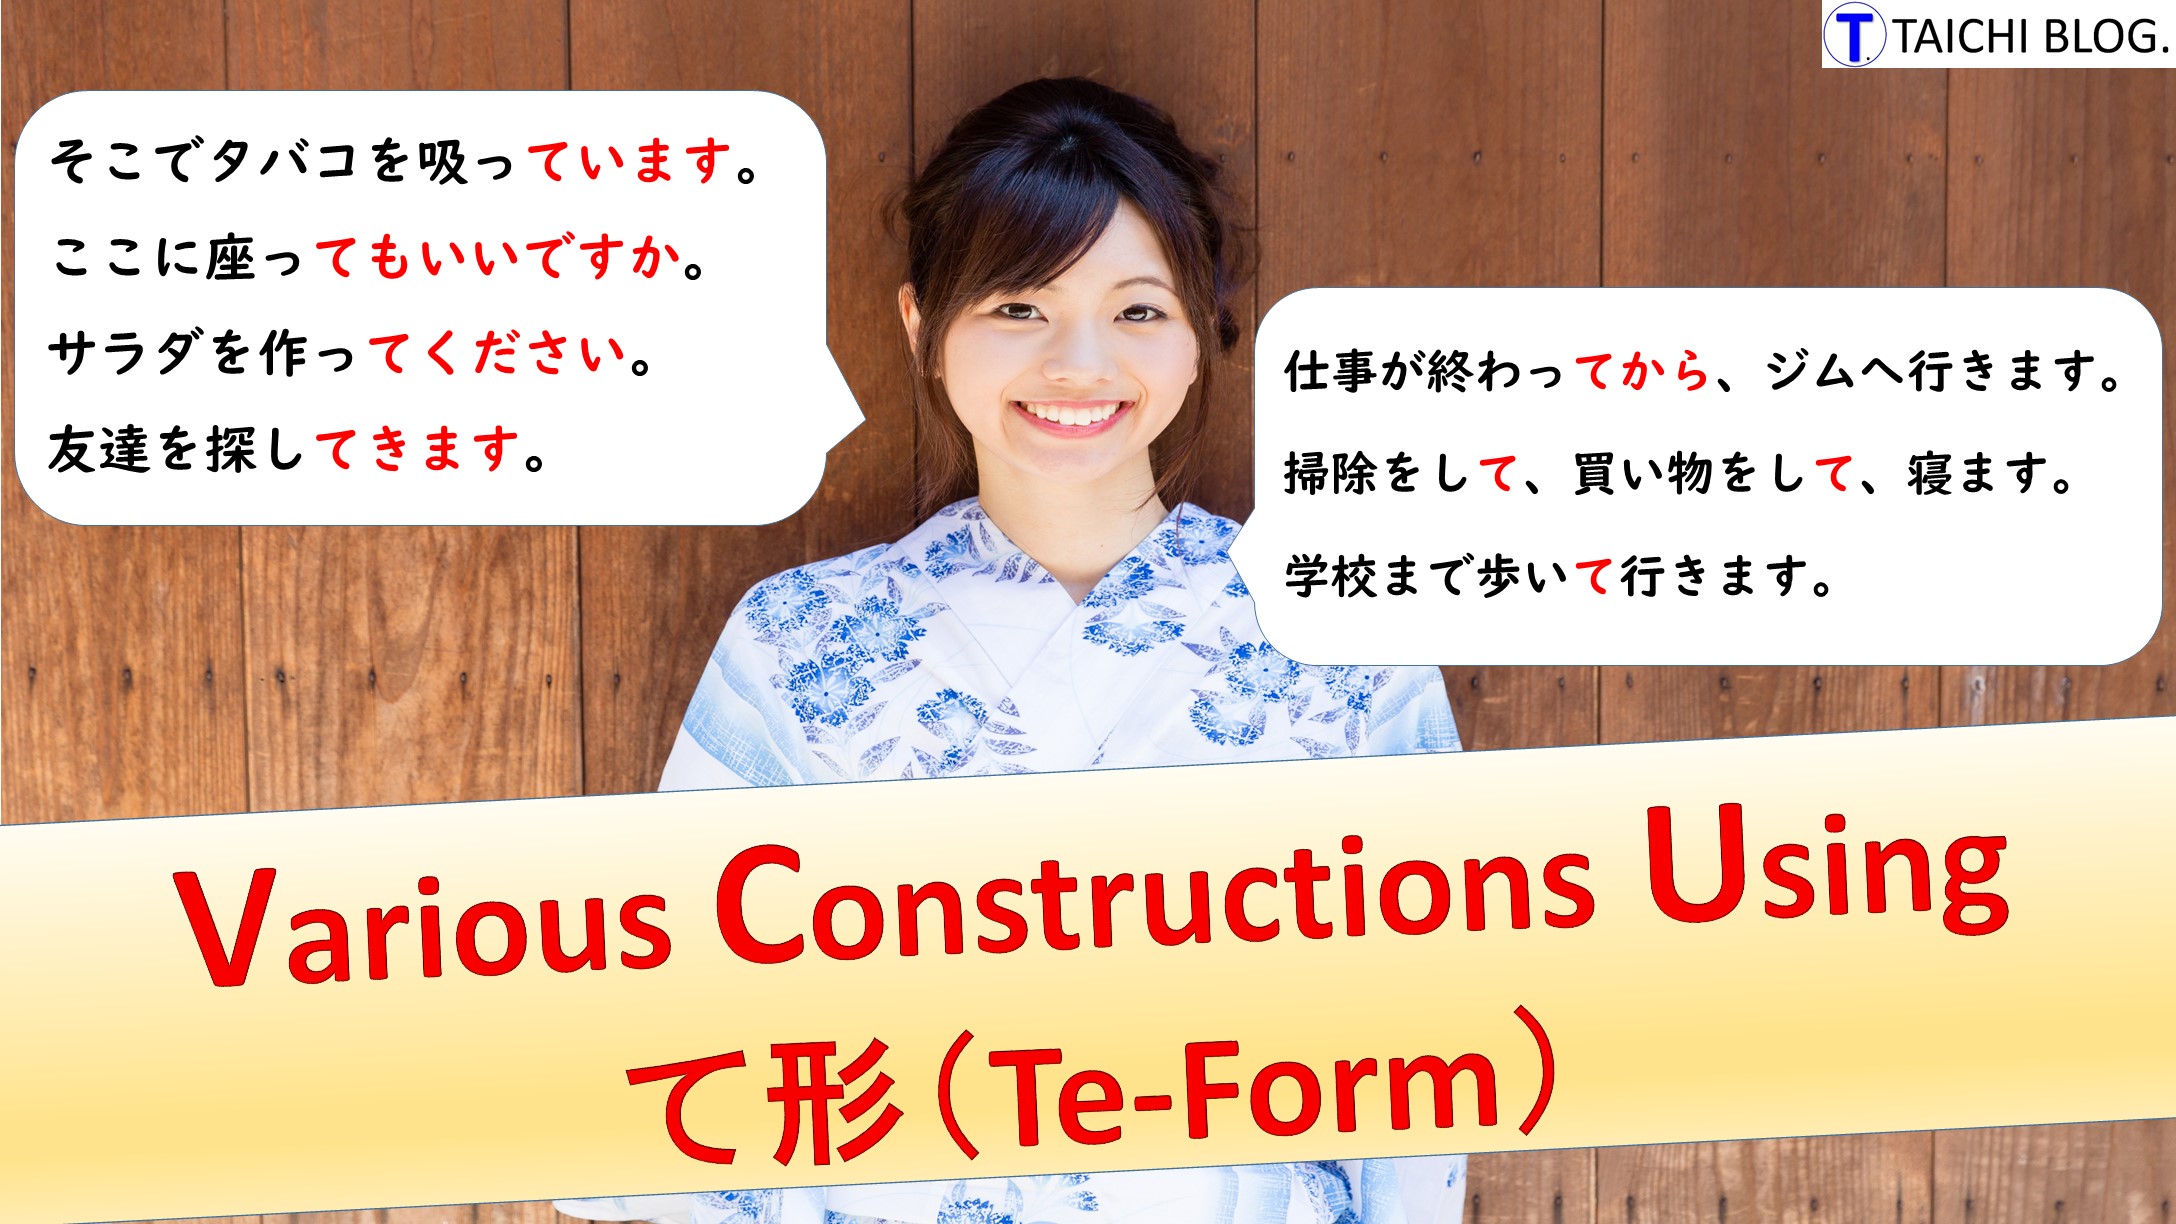 Te-form Constructions